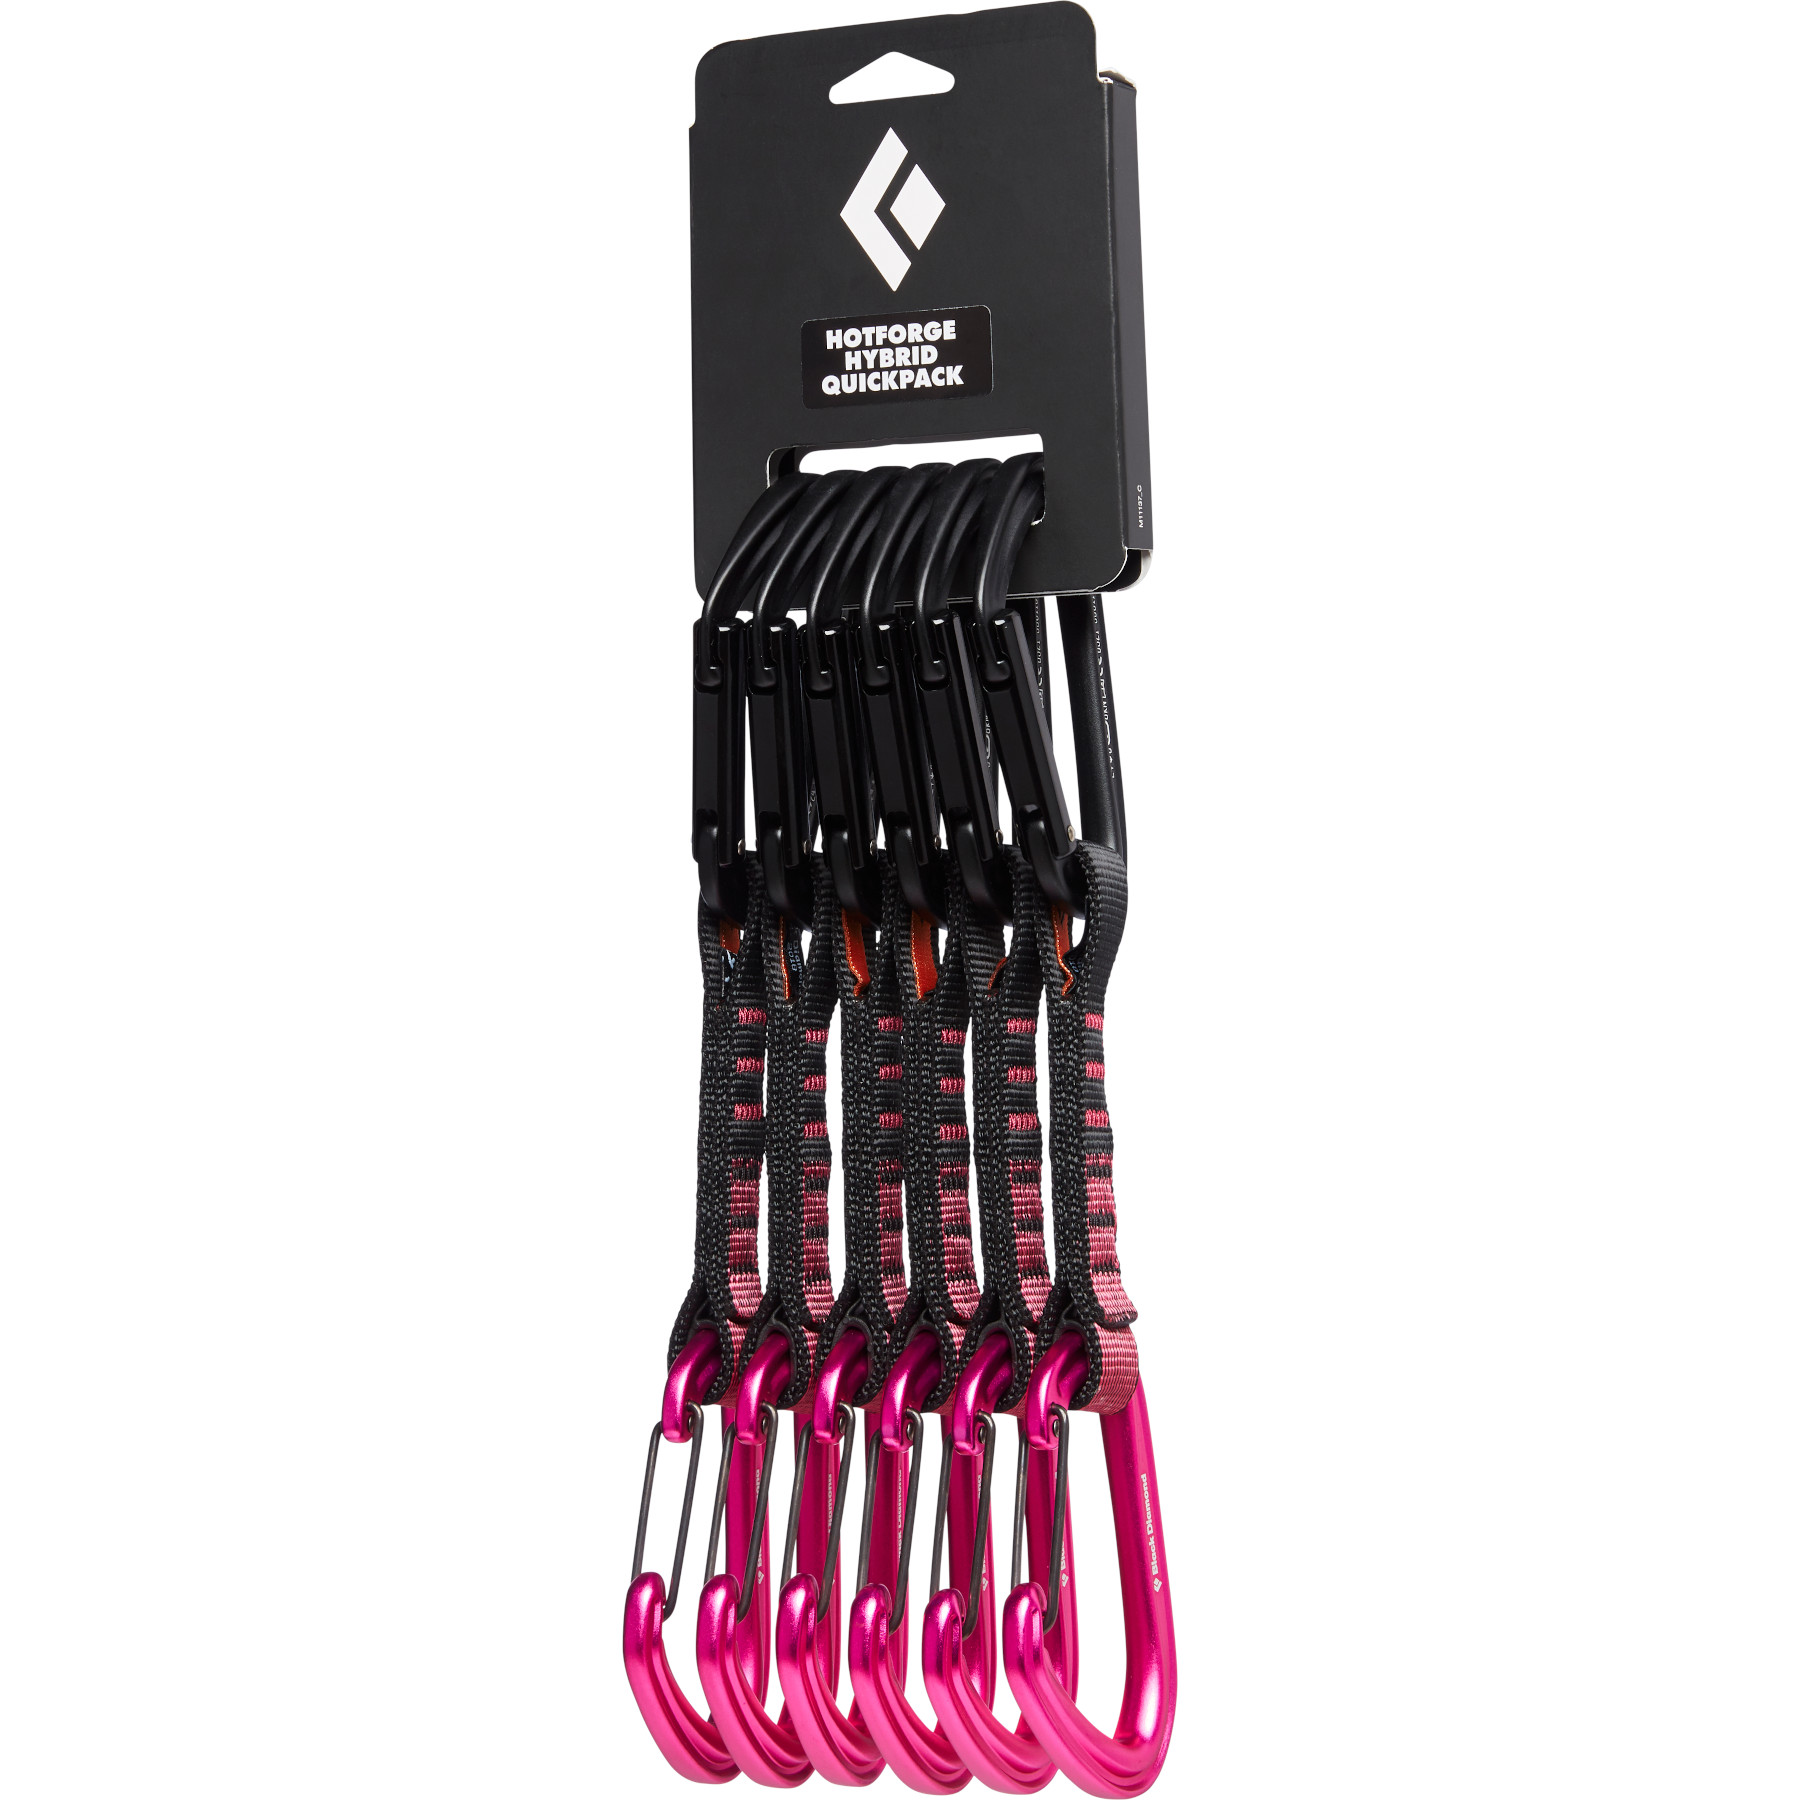 Produktbild von Black Diamond HotForge Hybrid Quickpack Express Set - 12 cm - Ultra Pink